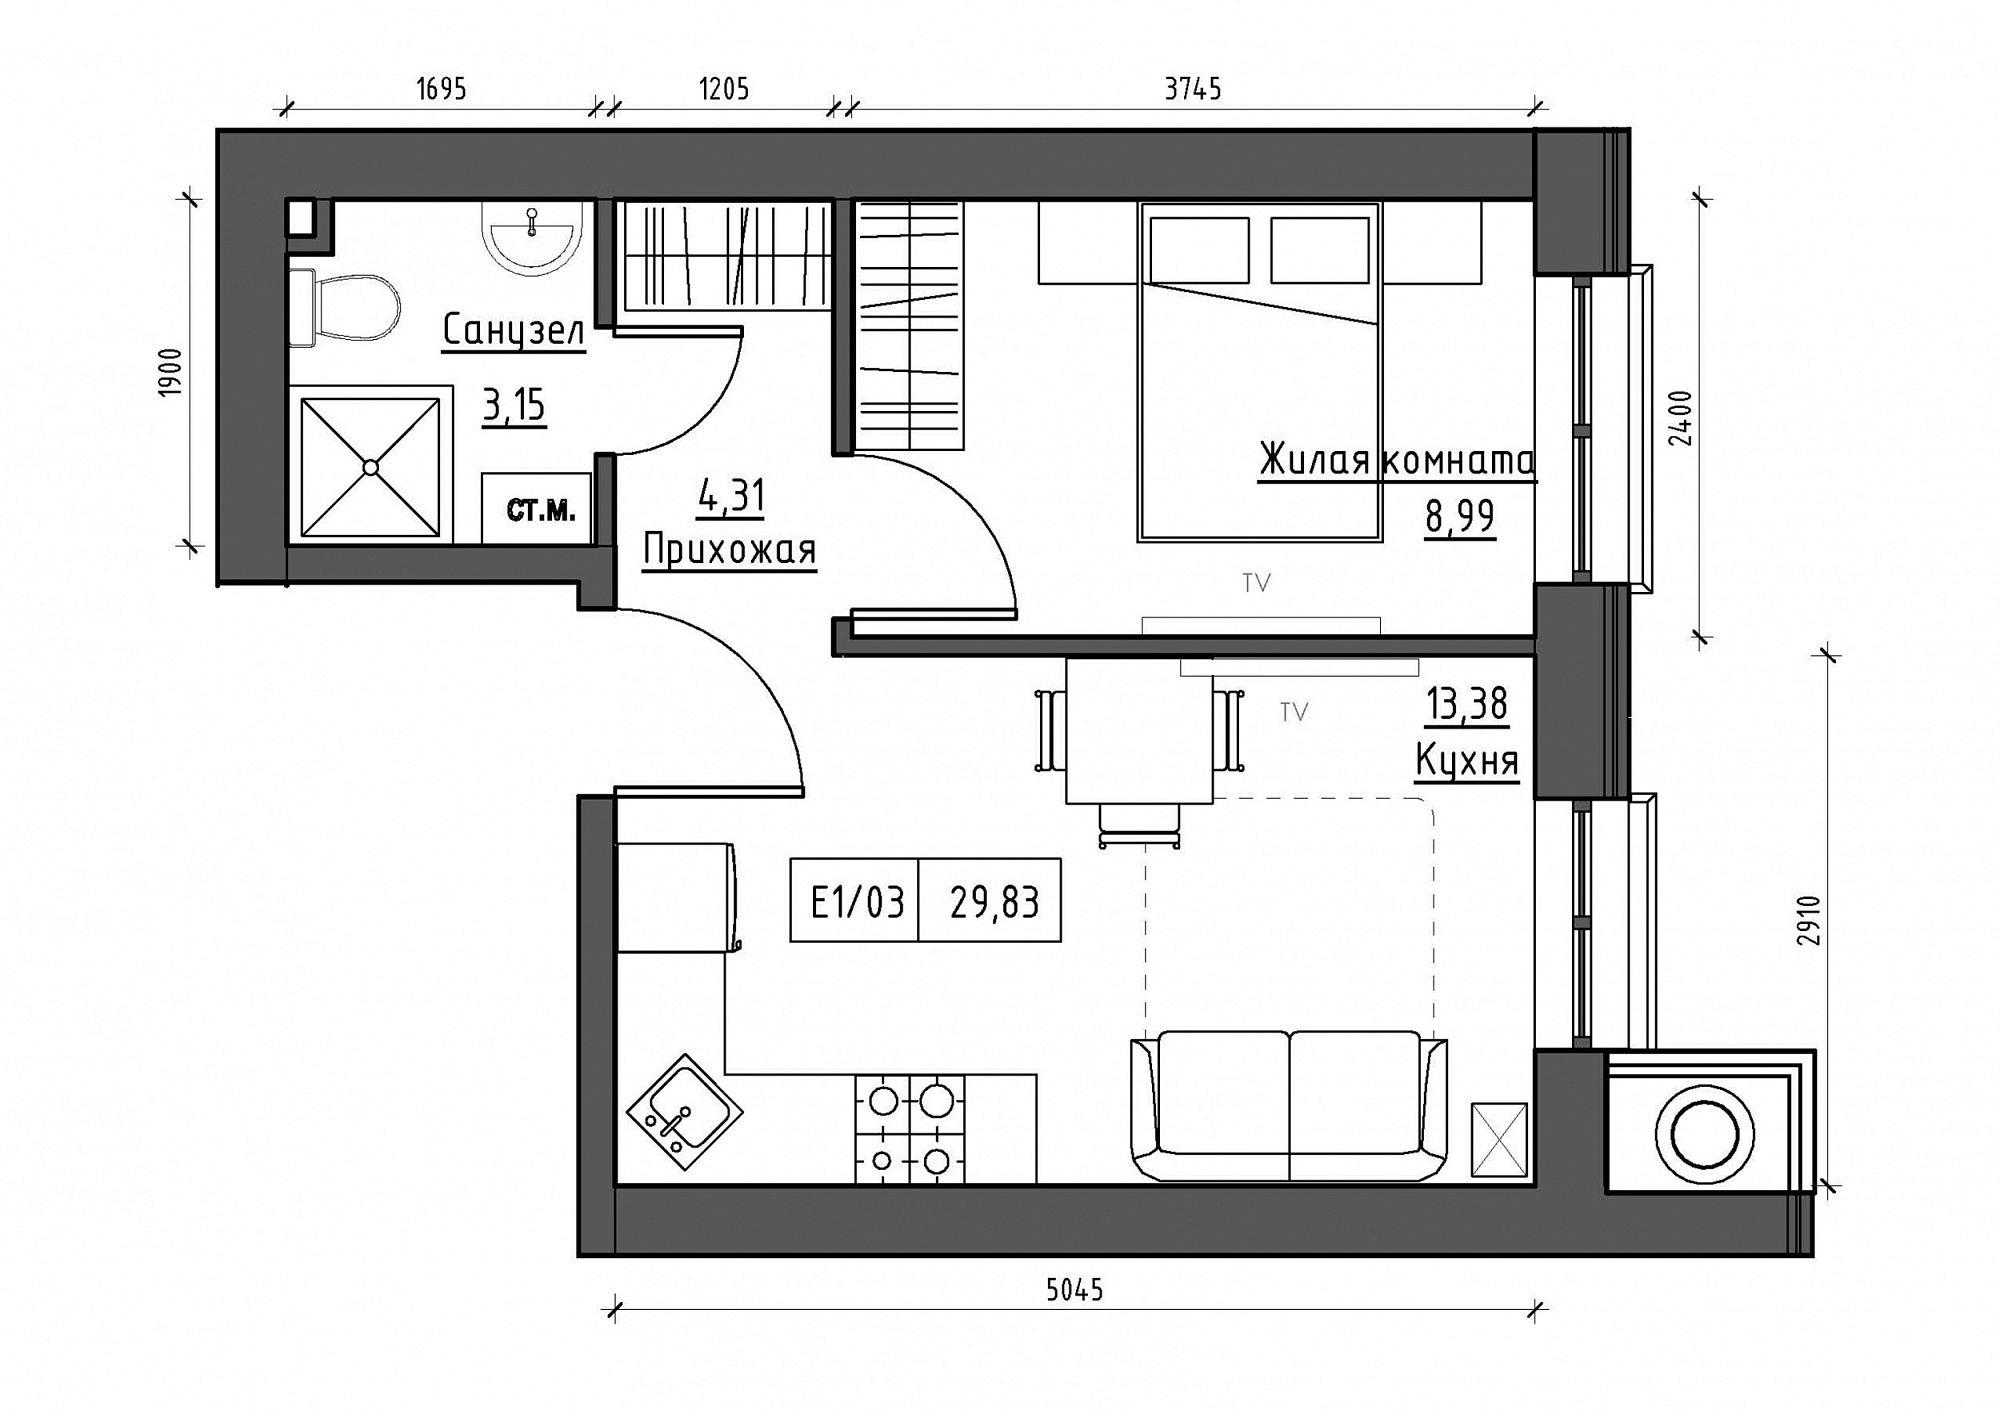 Планування 1-к квартира площею 29.83м2, KS-012-01/0013.